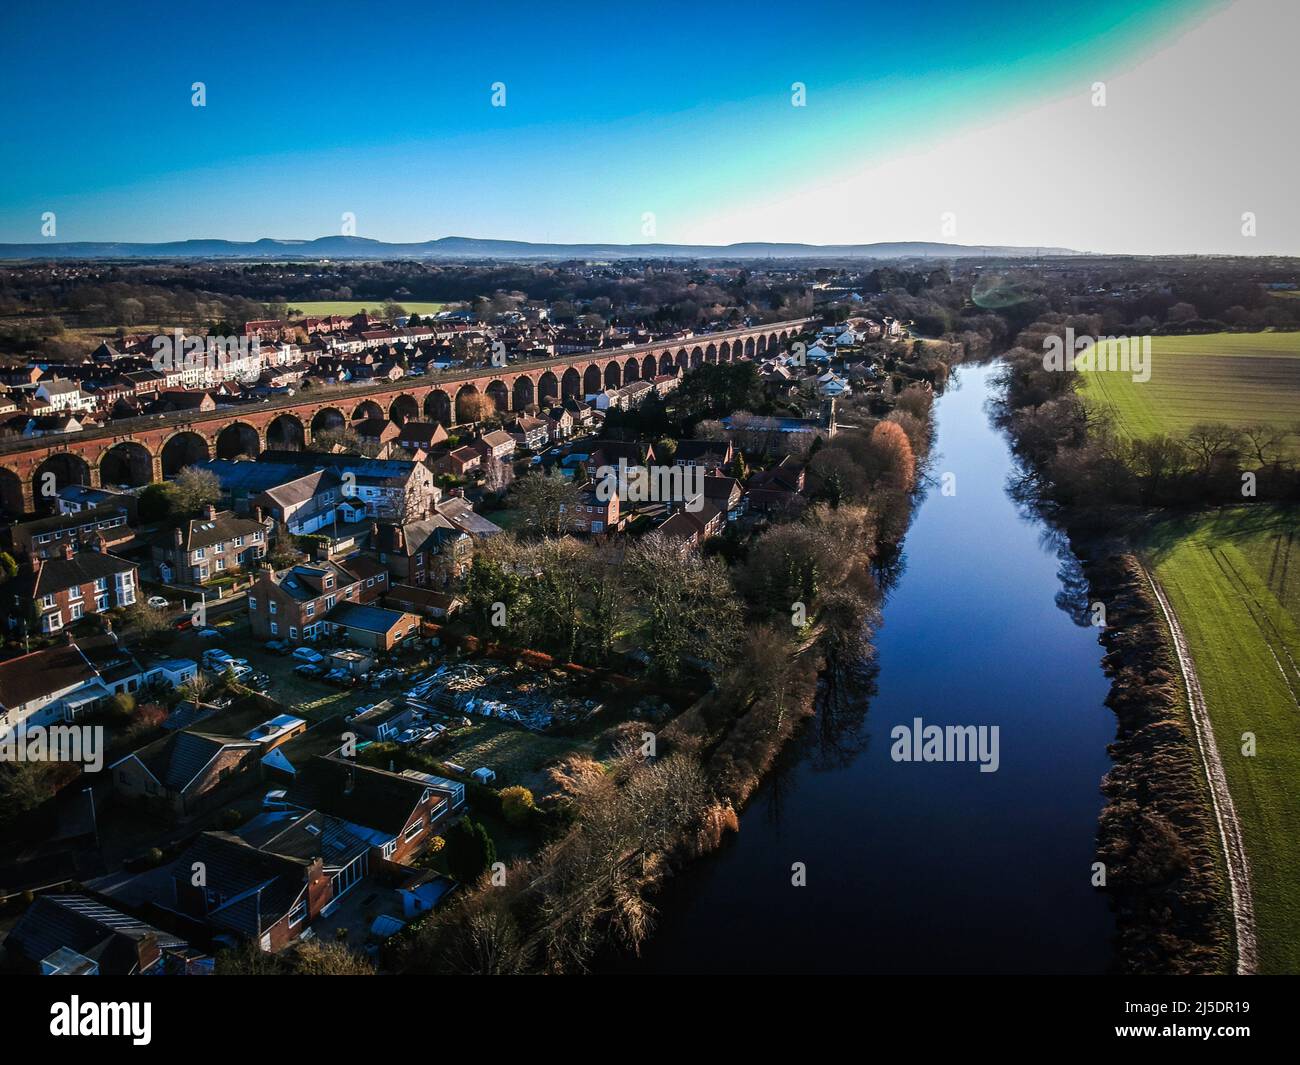 Una vista aérea de Yarm en el noreste de Inglaterra. Yarm está al lado del River Tees, que serpentea alrededor de la ciudad. Foto de stock